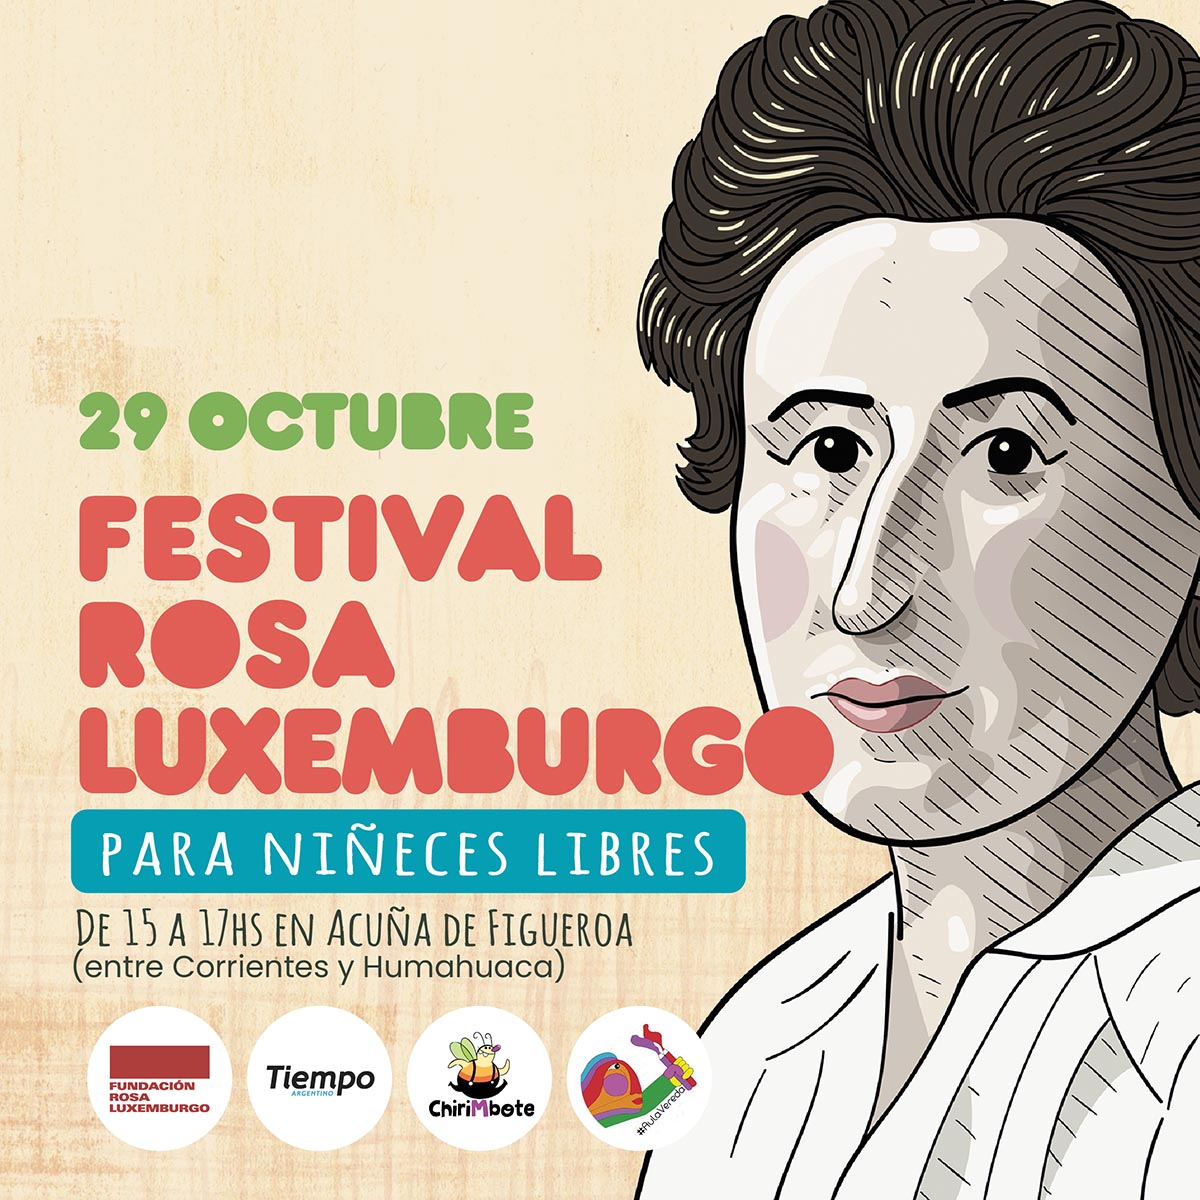 Rosa Luxemburgo y una fiesta callejera para jugar y aprender más sobre sus ideas